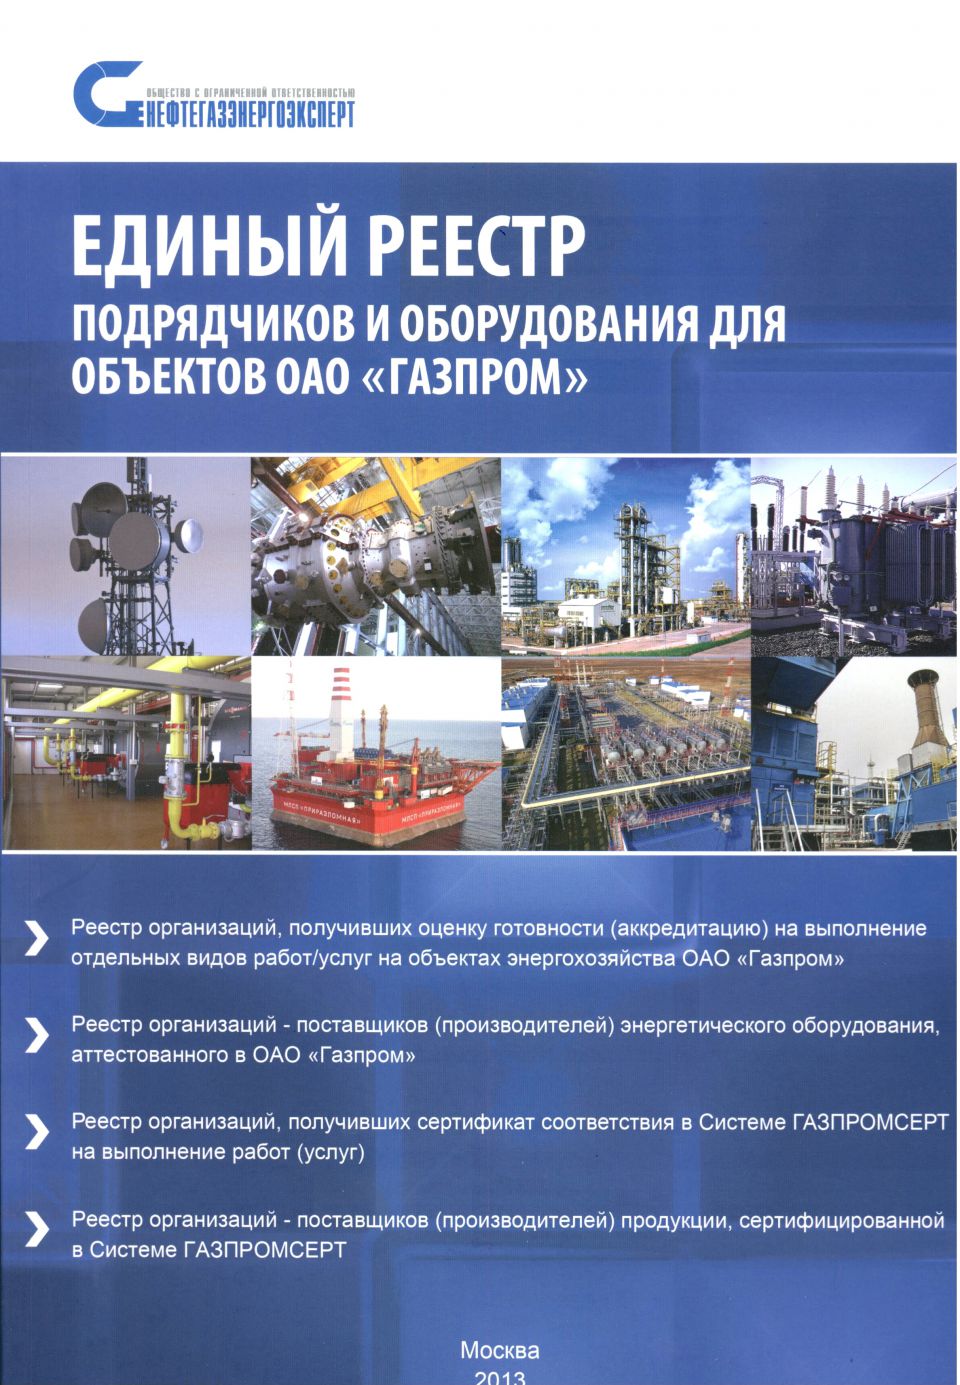 ООО «ГСИ СНЭМА» занесено в Единый реестр подрядчиков и оборудования для объектов Газпром